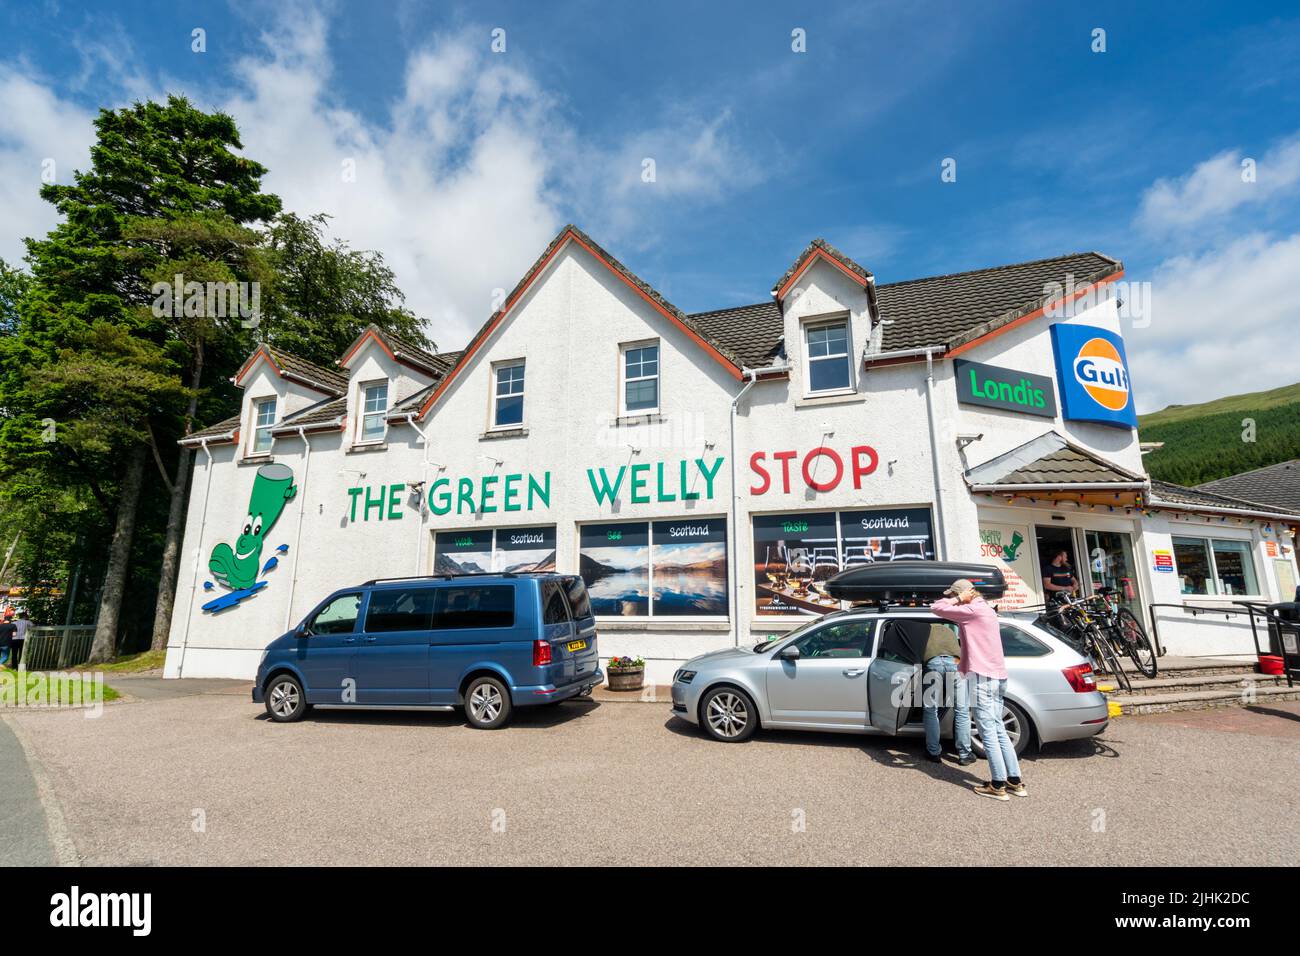 Le Green Willy Stop sur le A82 à Tyndrum, en Écosse, au Royaume-Uni. Une station-service avec carburant, nourriture et un magasin. Banque D'Images